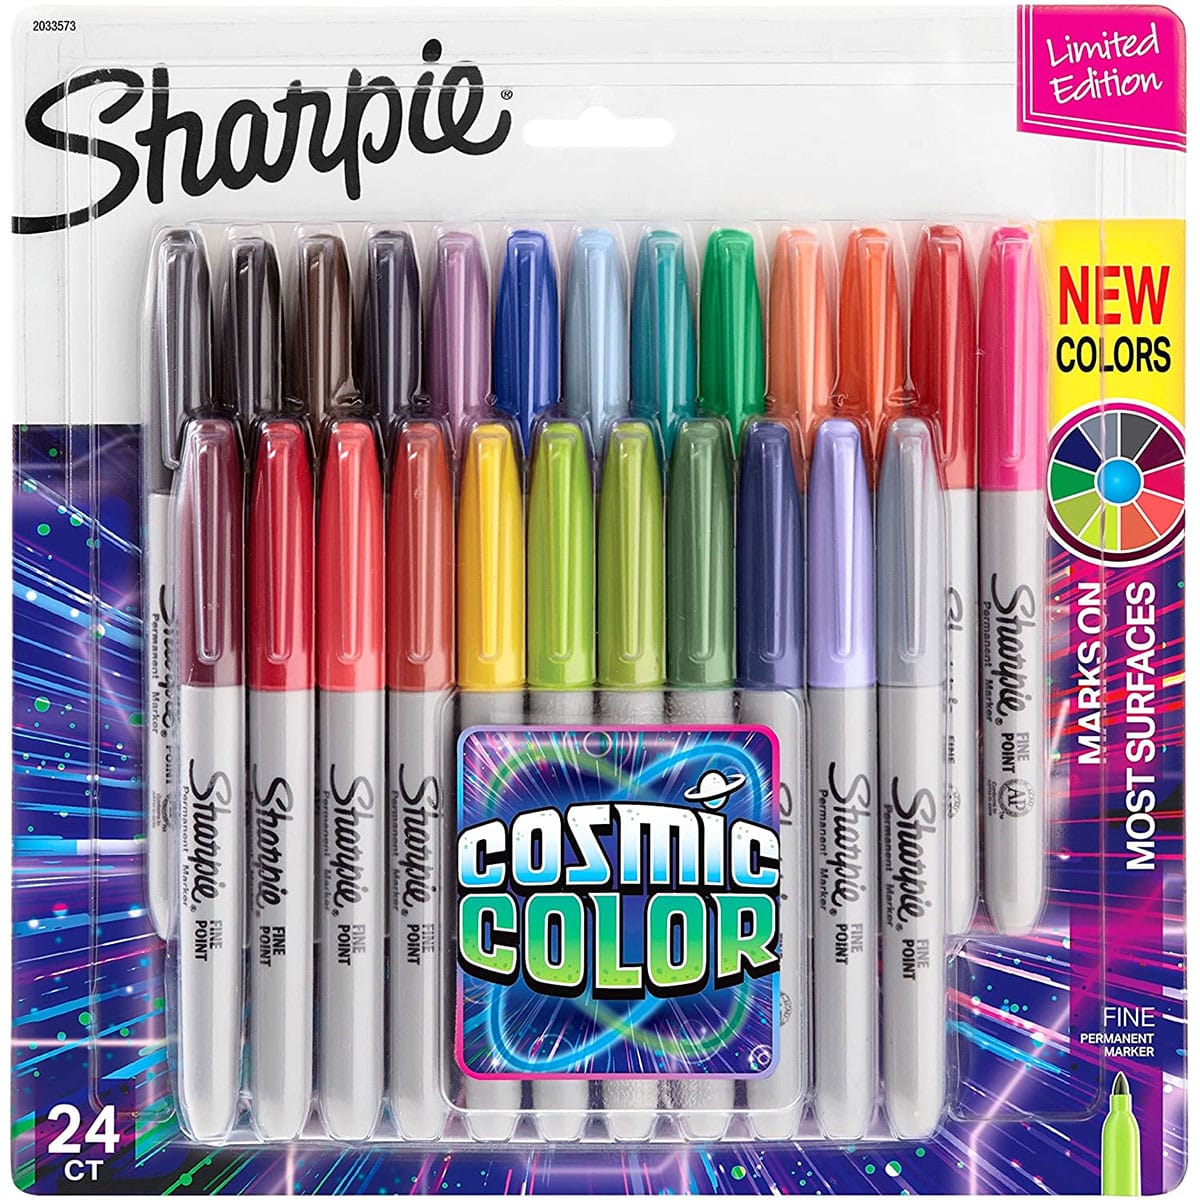 twintig het einde Zinloos Sharpie Cosmic Color marker set 24 Kleuren kopen bij Suitup Art Supplies